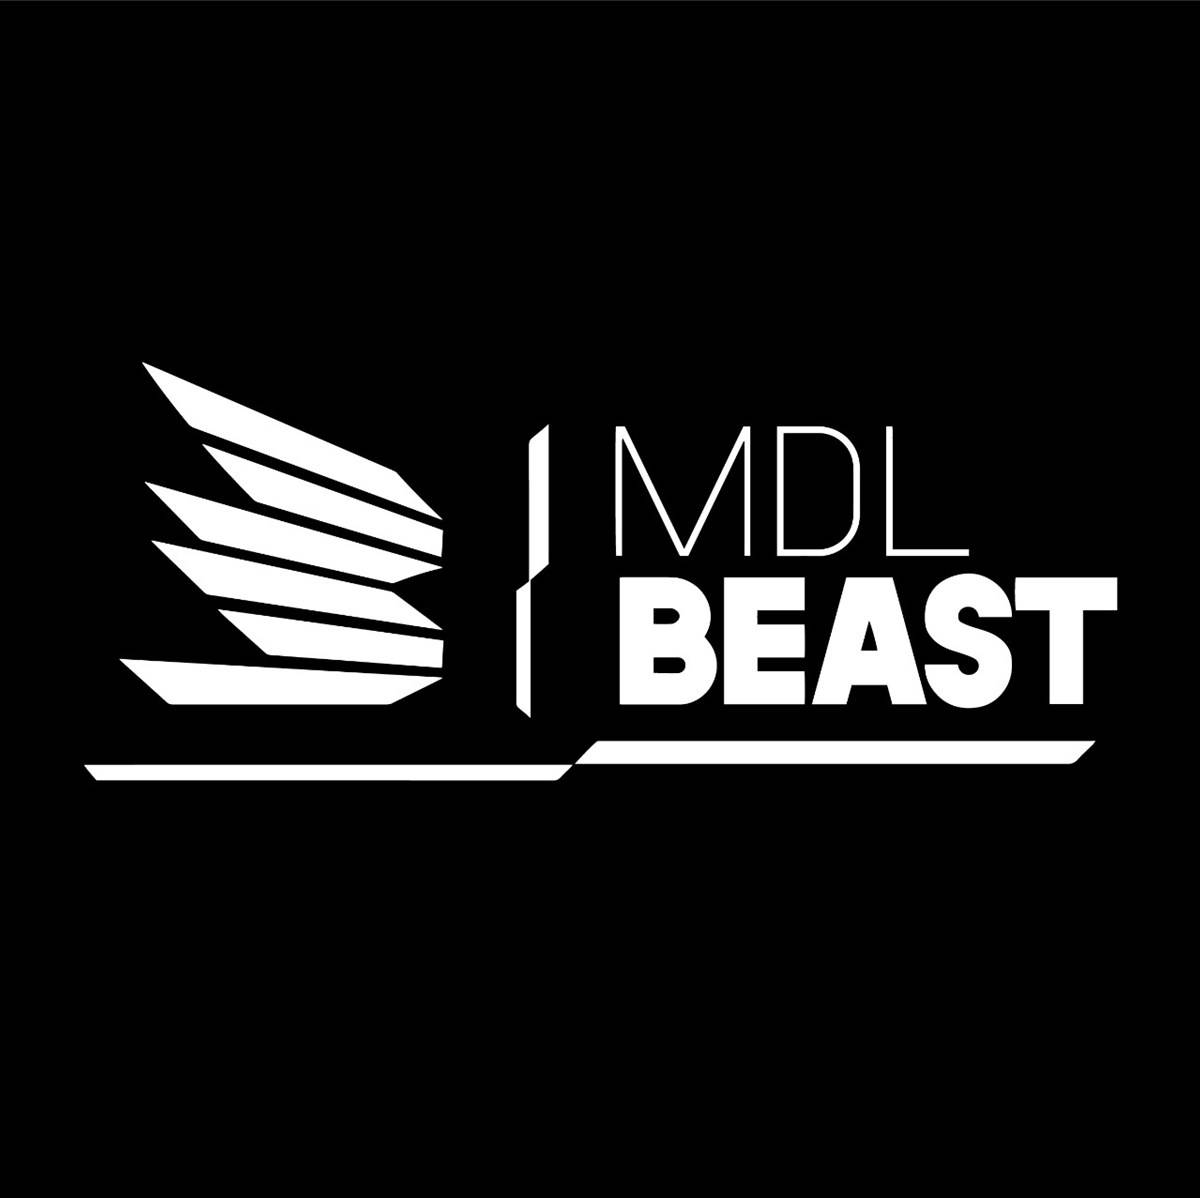 MDL beast أضخم مهرجان موسيقي فني في الرياض